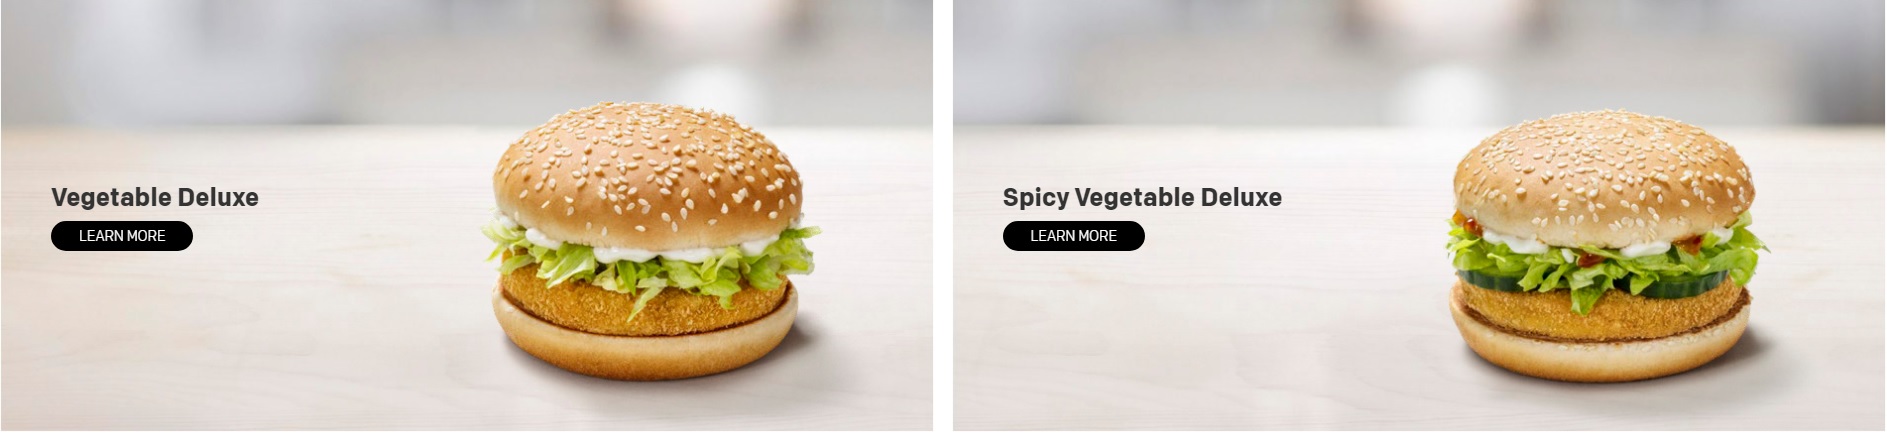 McDonald's Veggie Deluxe